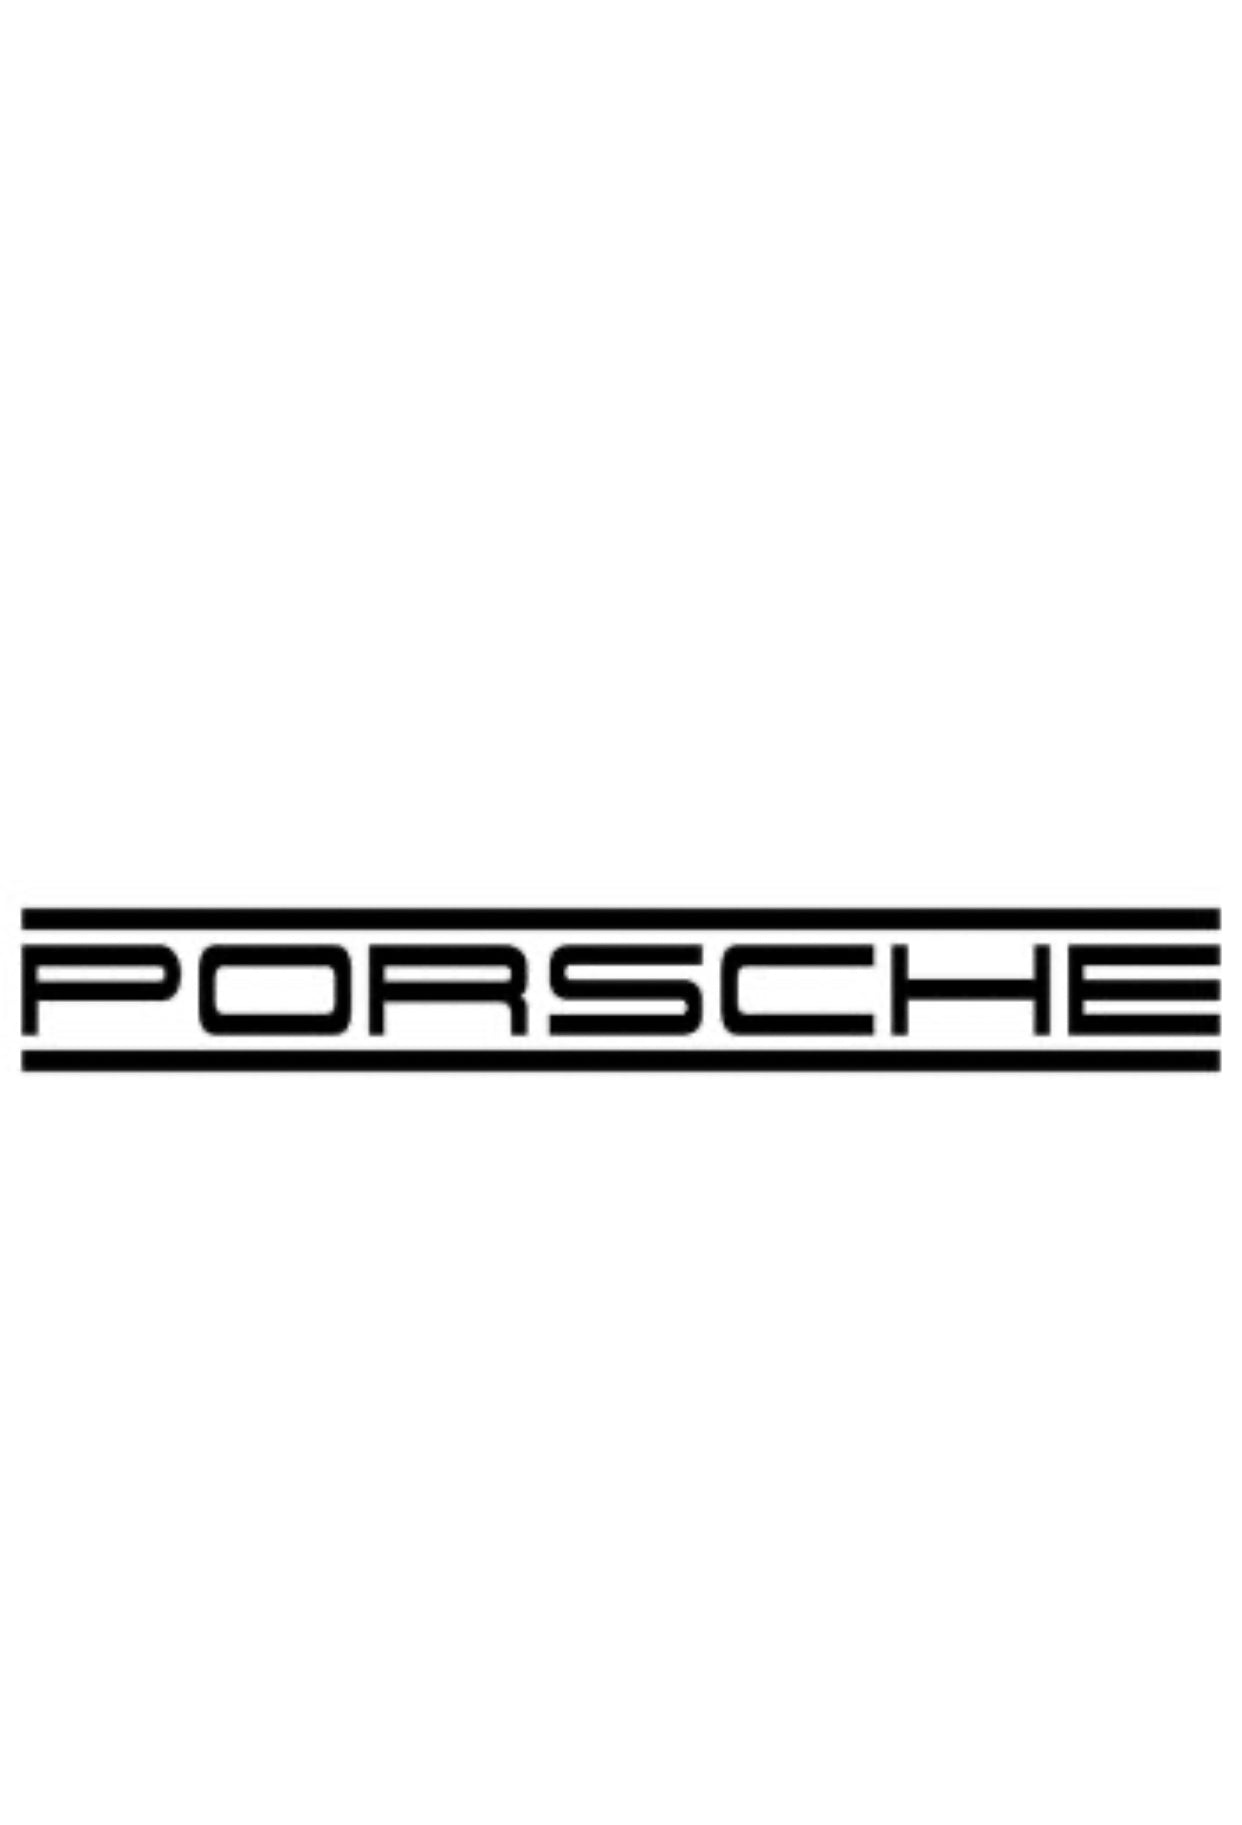 Porsche Cayenne 958 Luftfahrwerk tieferlegen